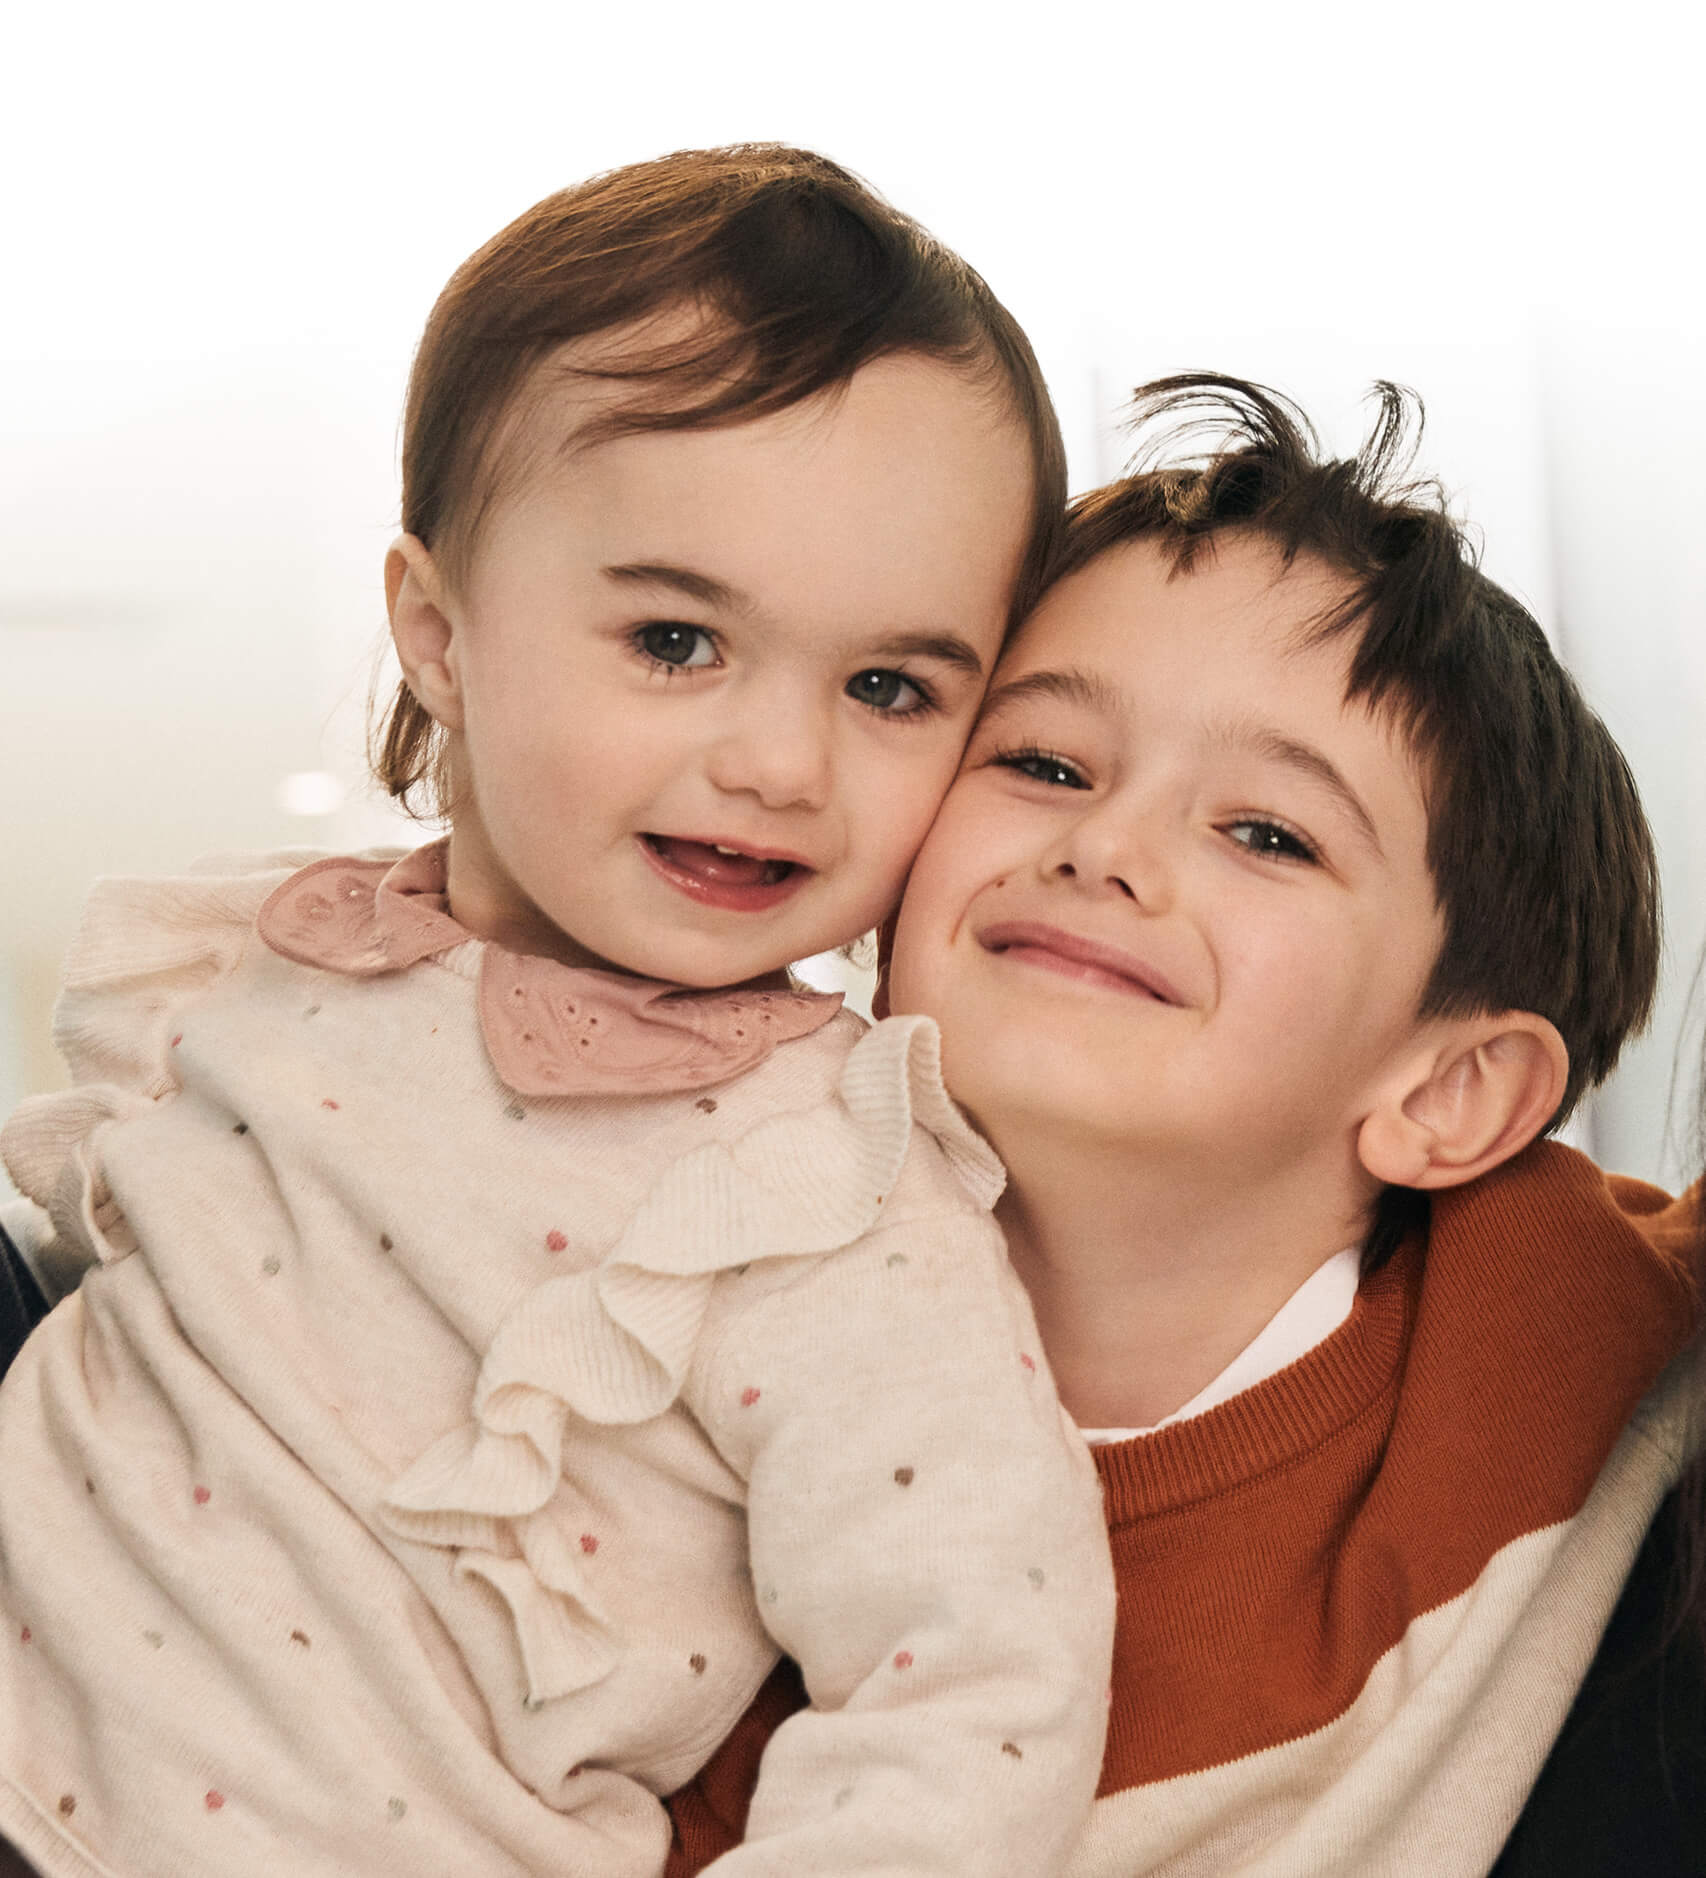 Viviane, une jeune patiente de deux ans, est enlacée par son grand frère Édouard, tout sourire à ses côtés.